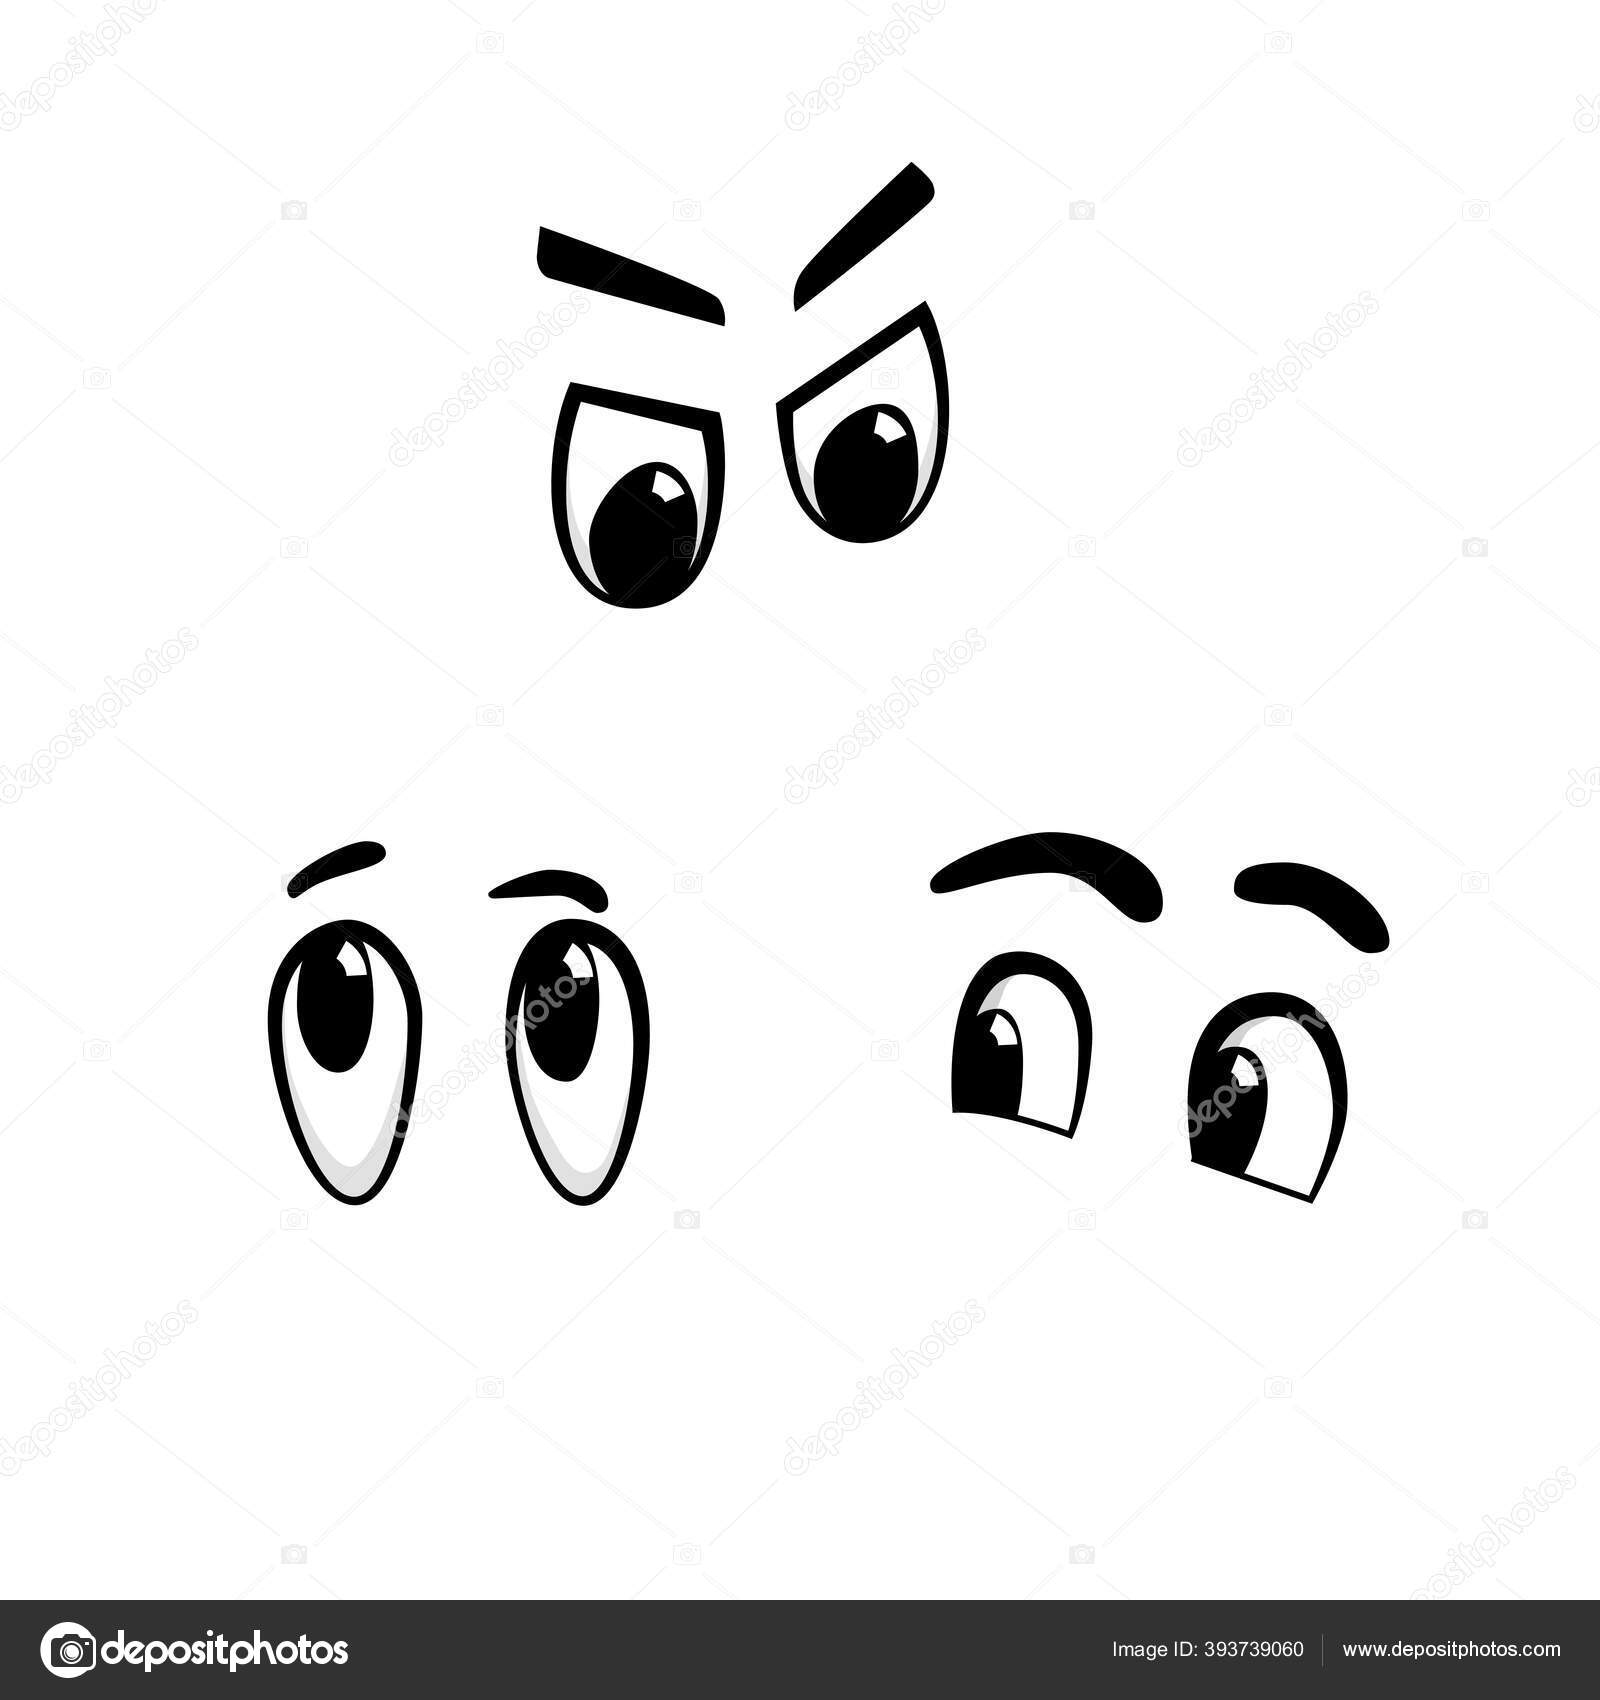 confused cartoon eyes